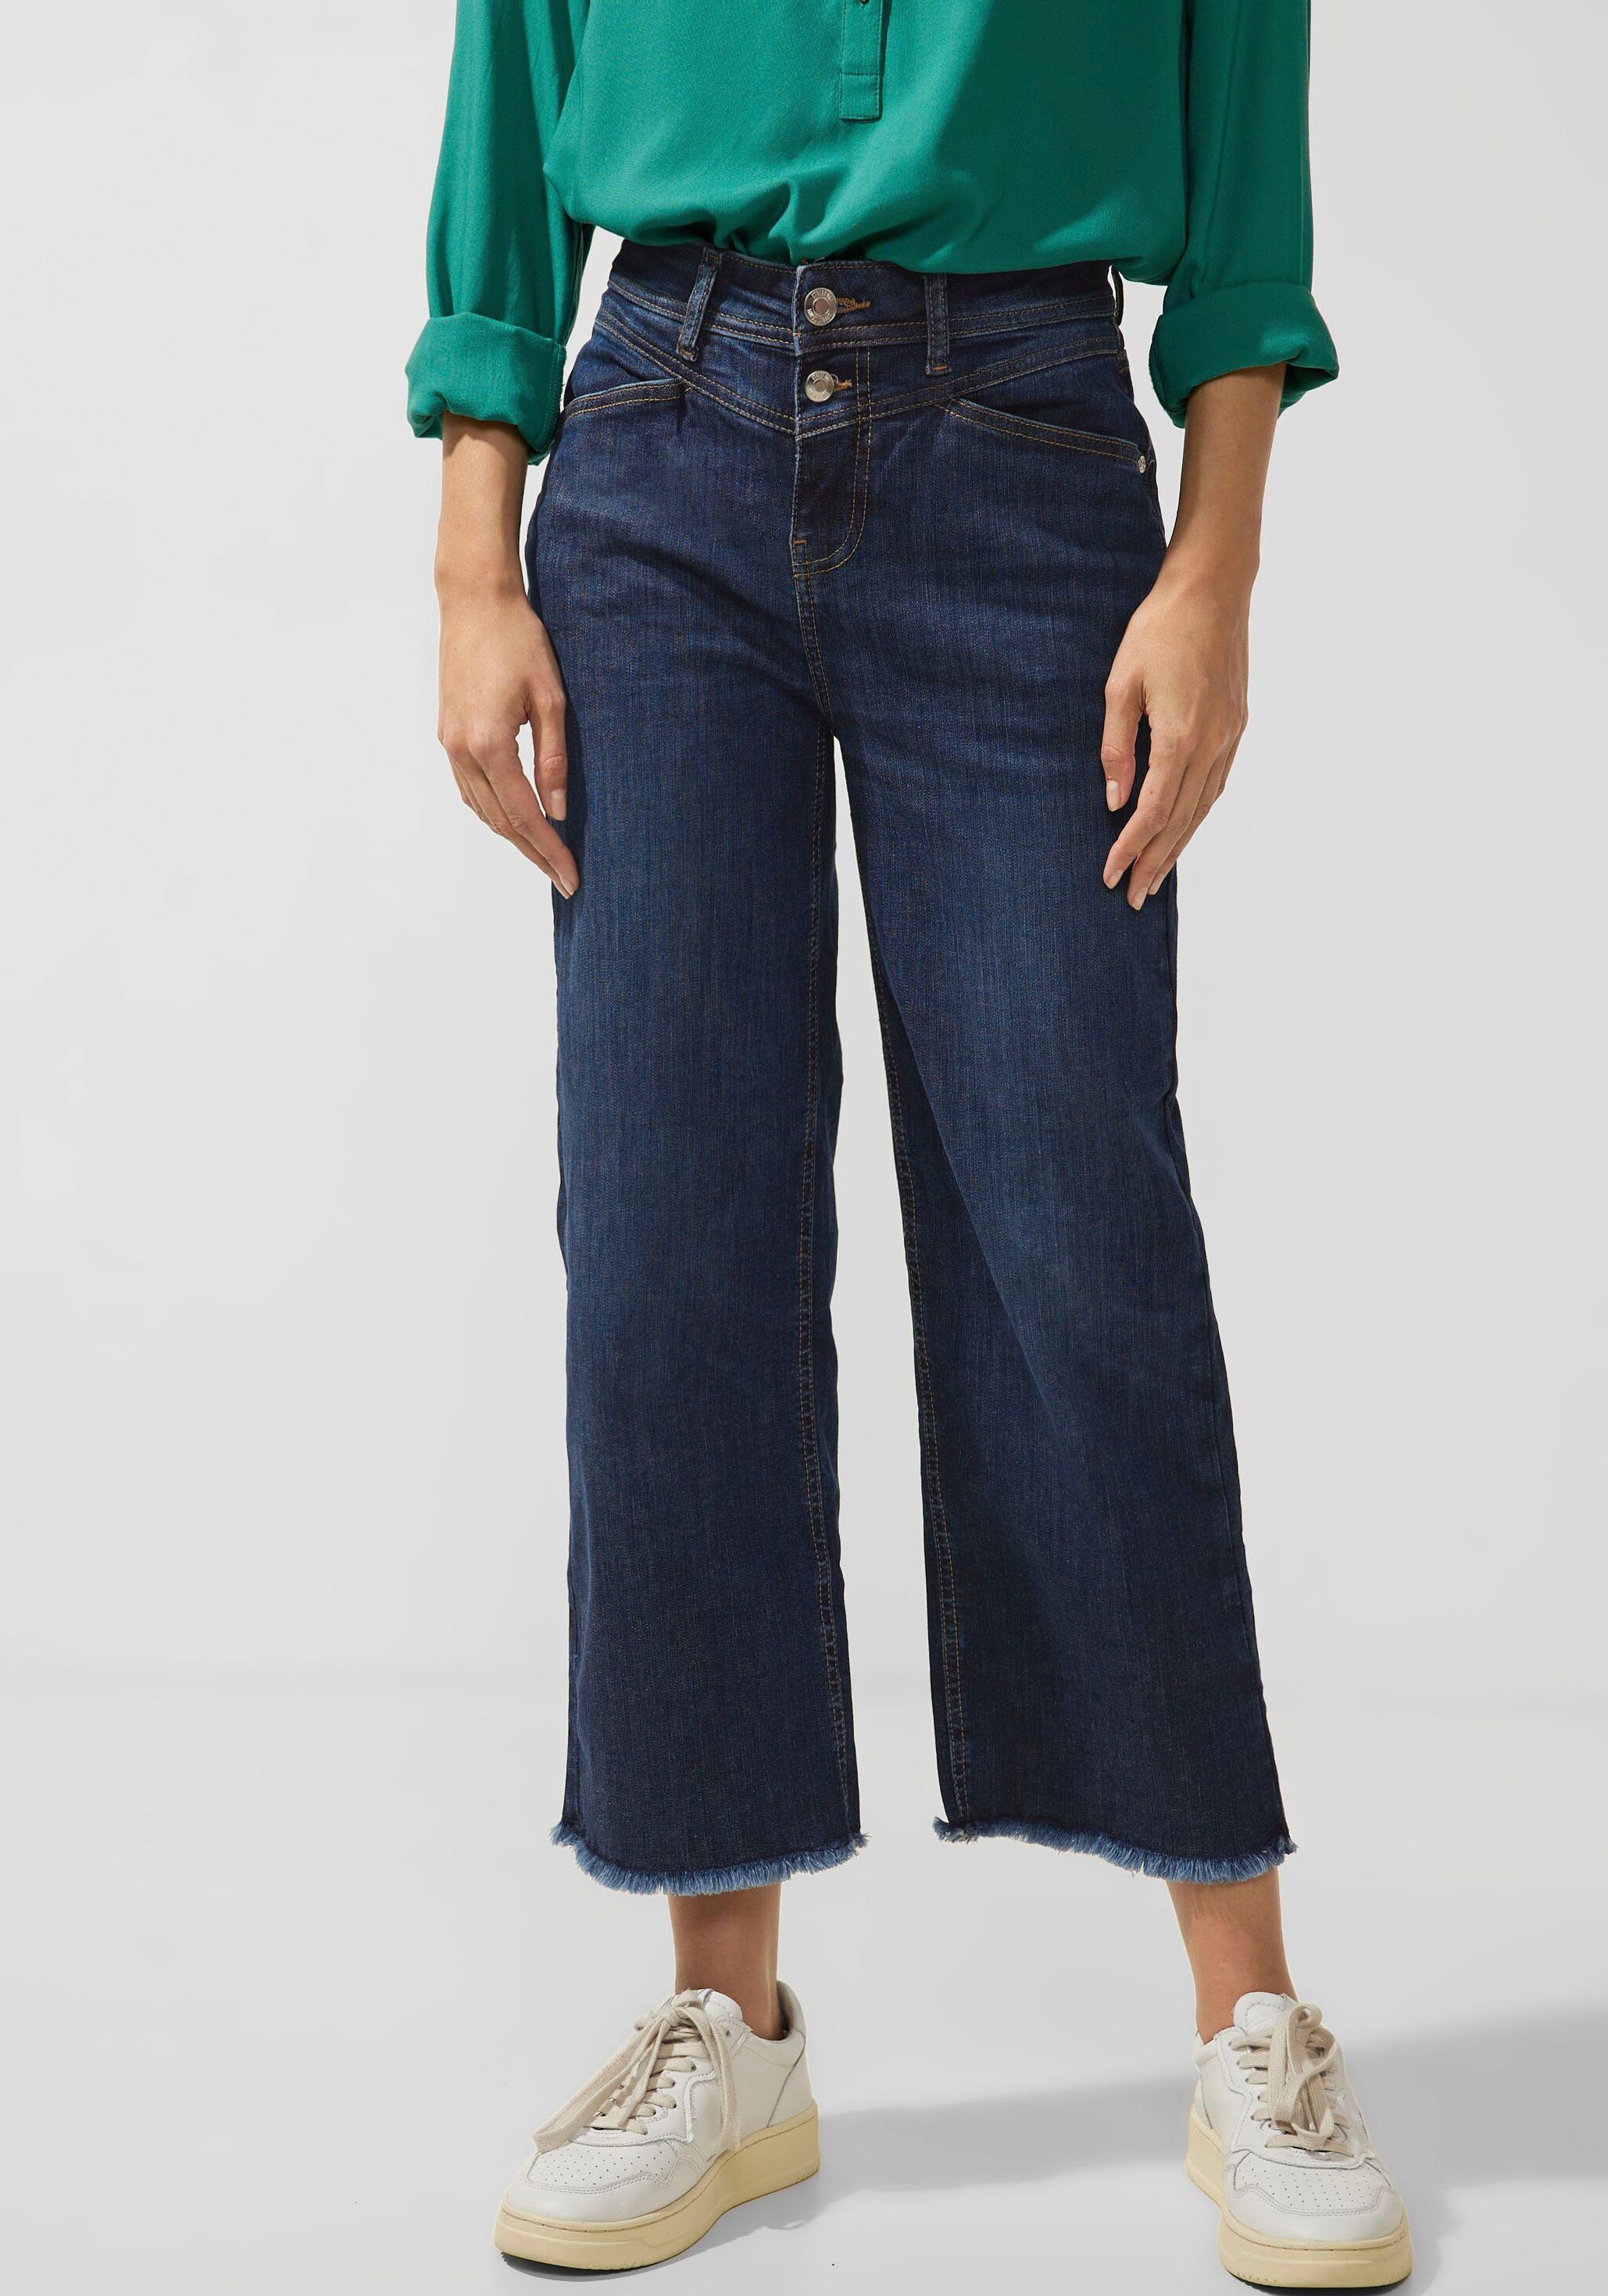 Jeans und STREET am Bund, dunkelblaue Waschung zeitlos elegant macht ONE Modell mit Die Ziernähten Weite das modischen